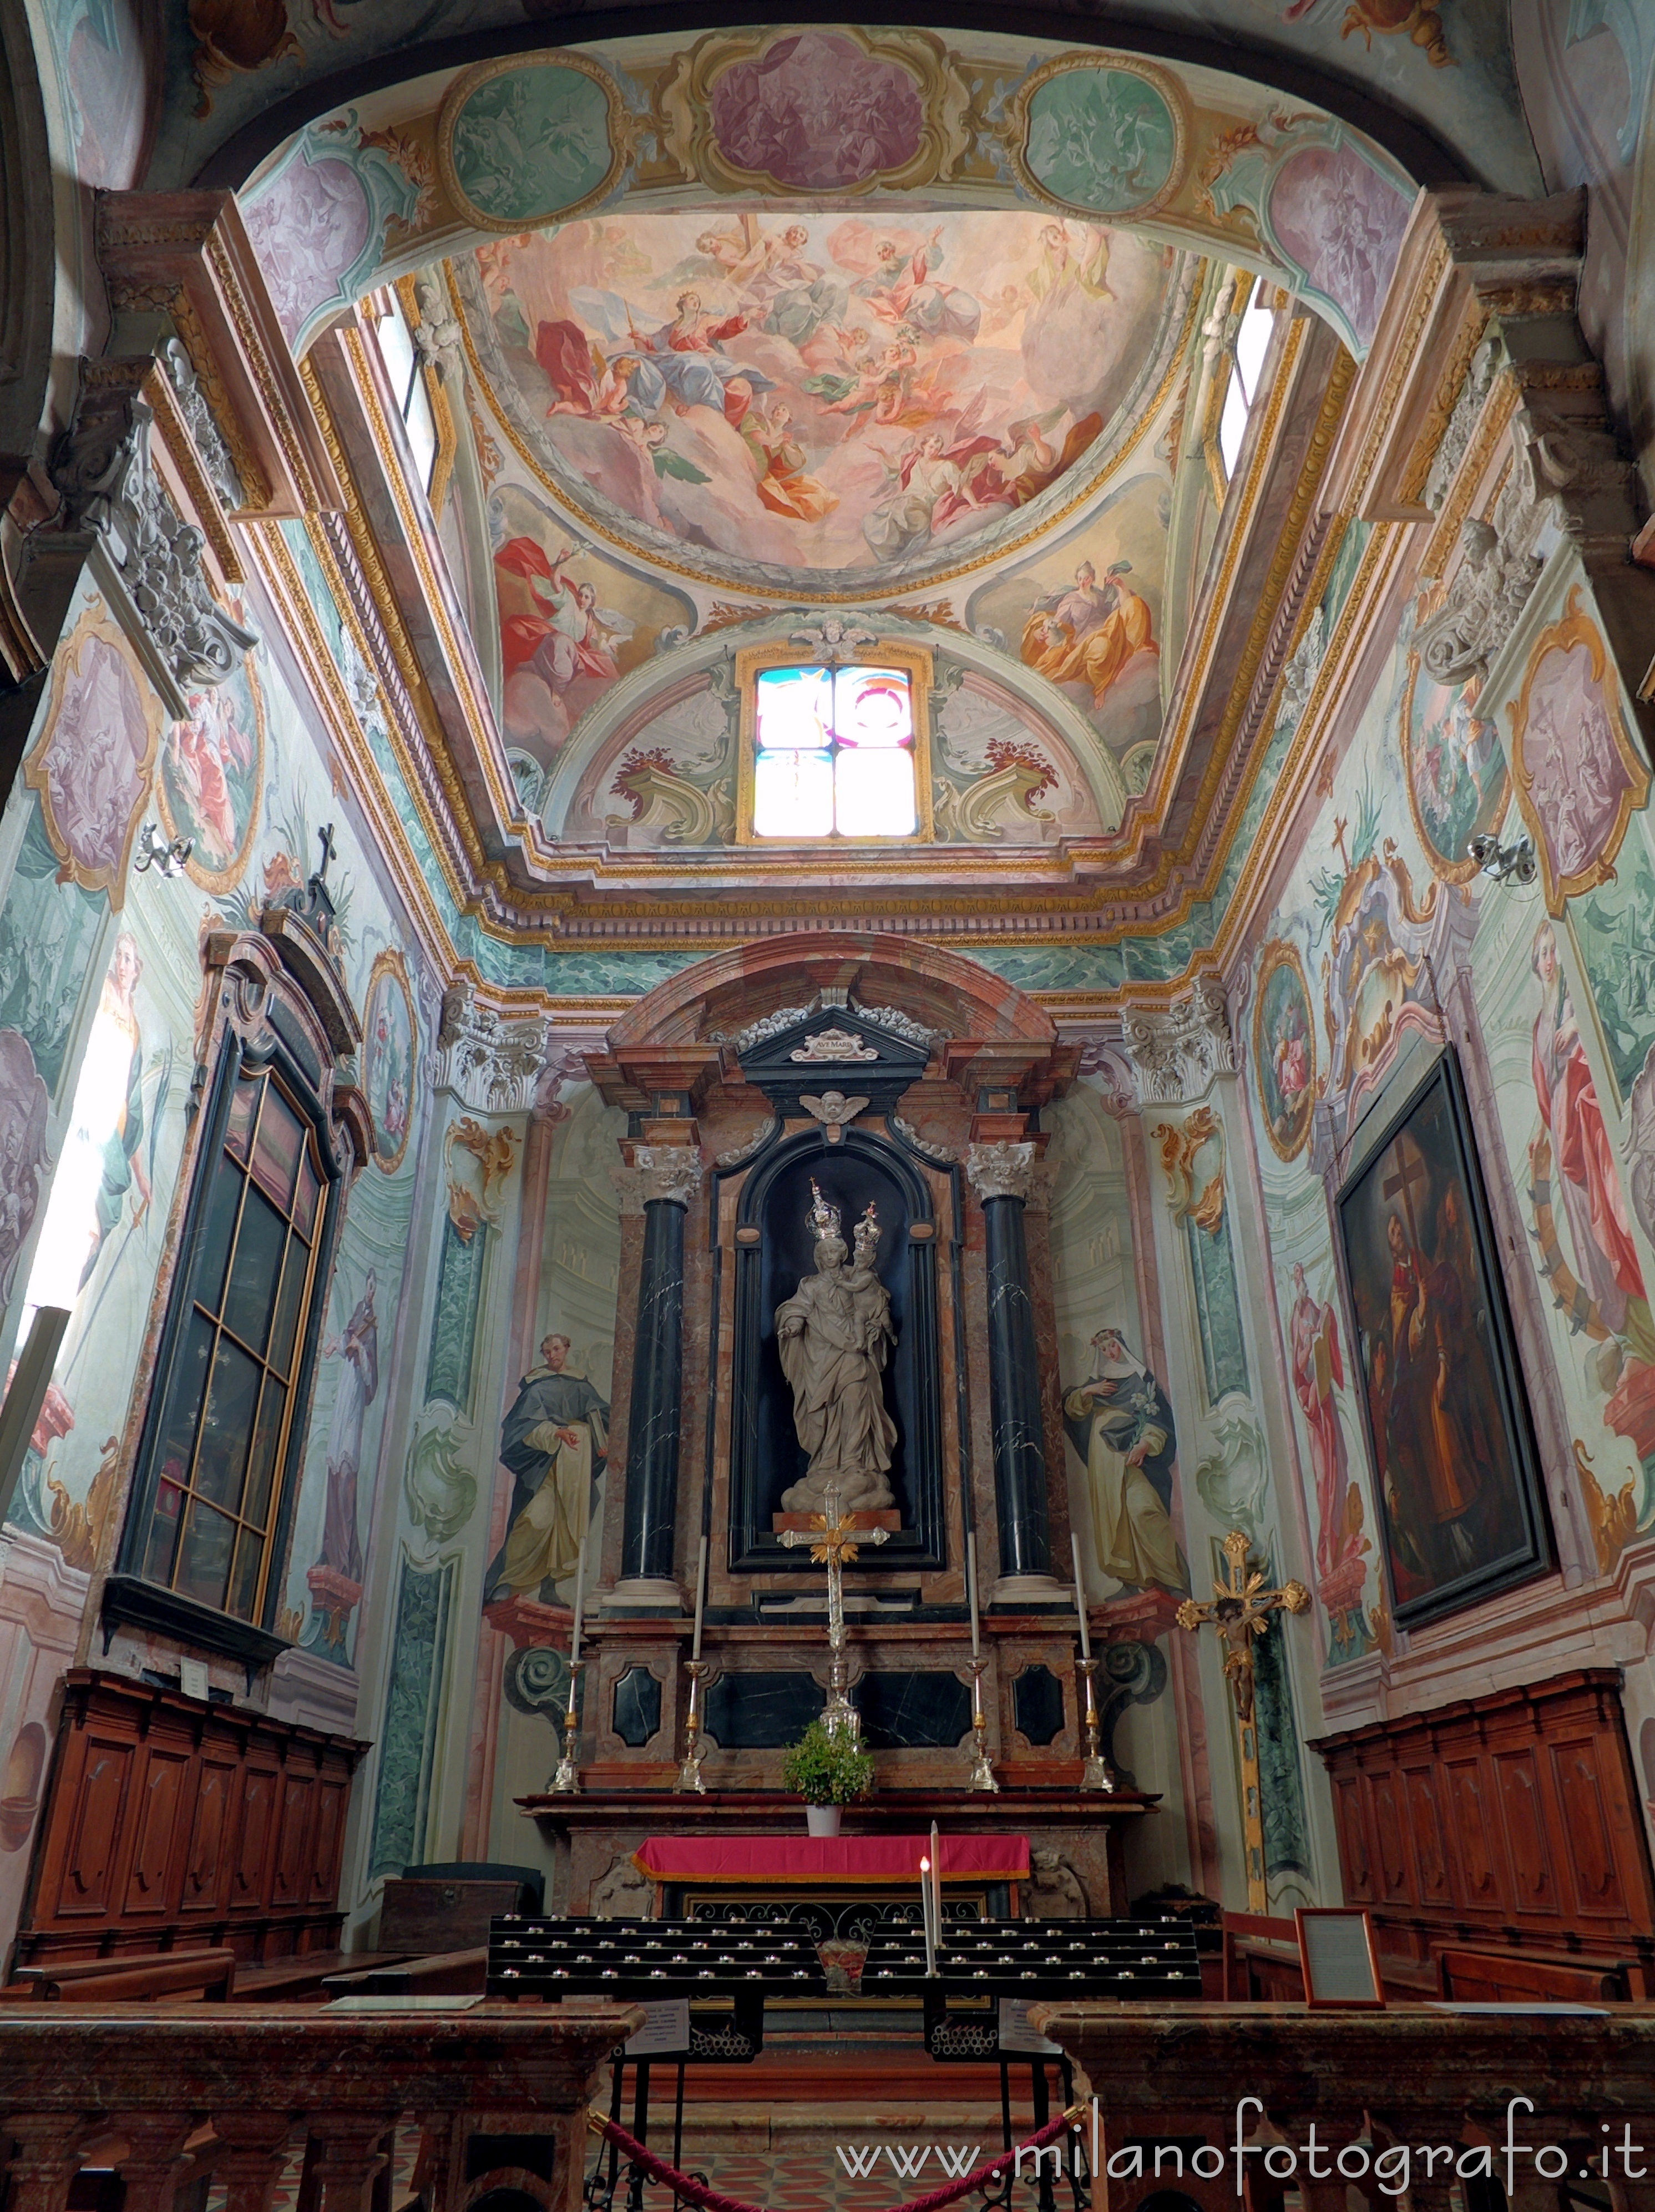 Orta San Giulio (Novara, Italy): Chapel of the Rosary in the Church of Santa Maria Assunta - Orta San Giulio (Novara, Italy)